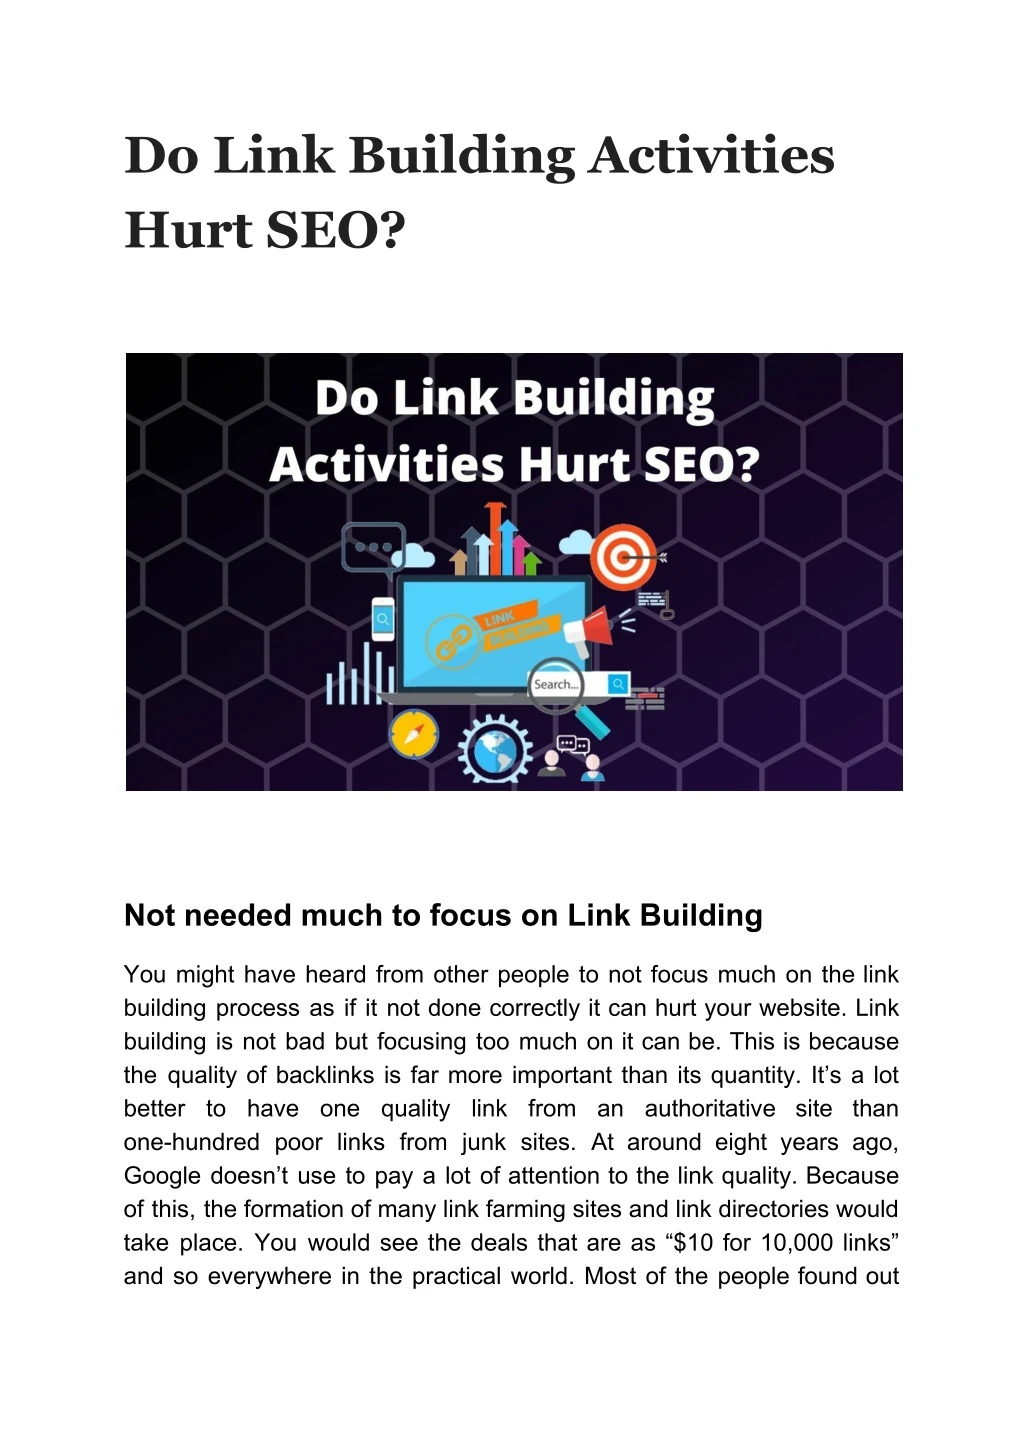 do link building activities hurt seo